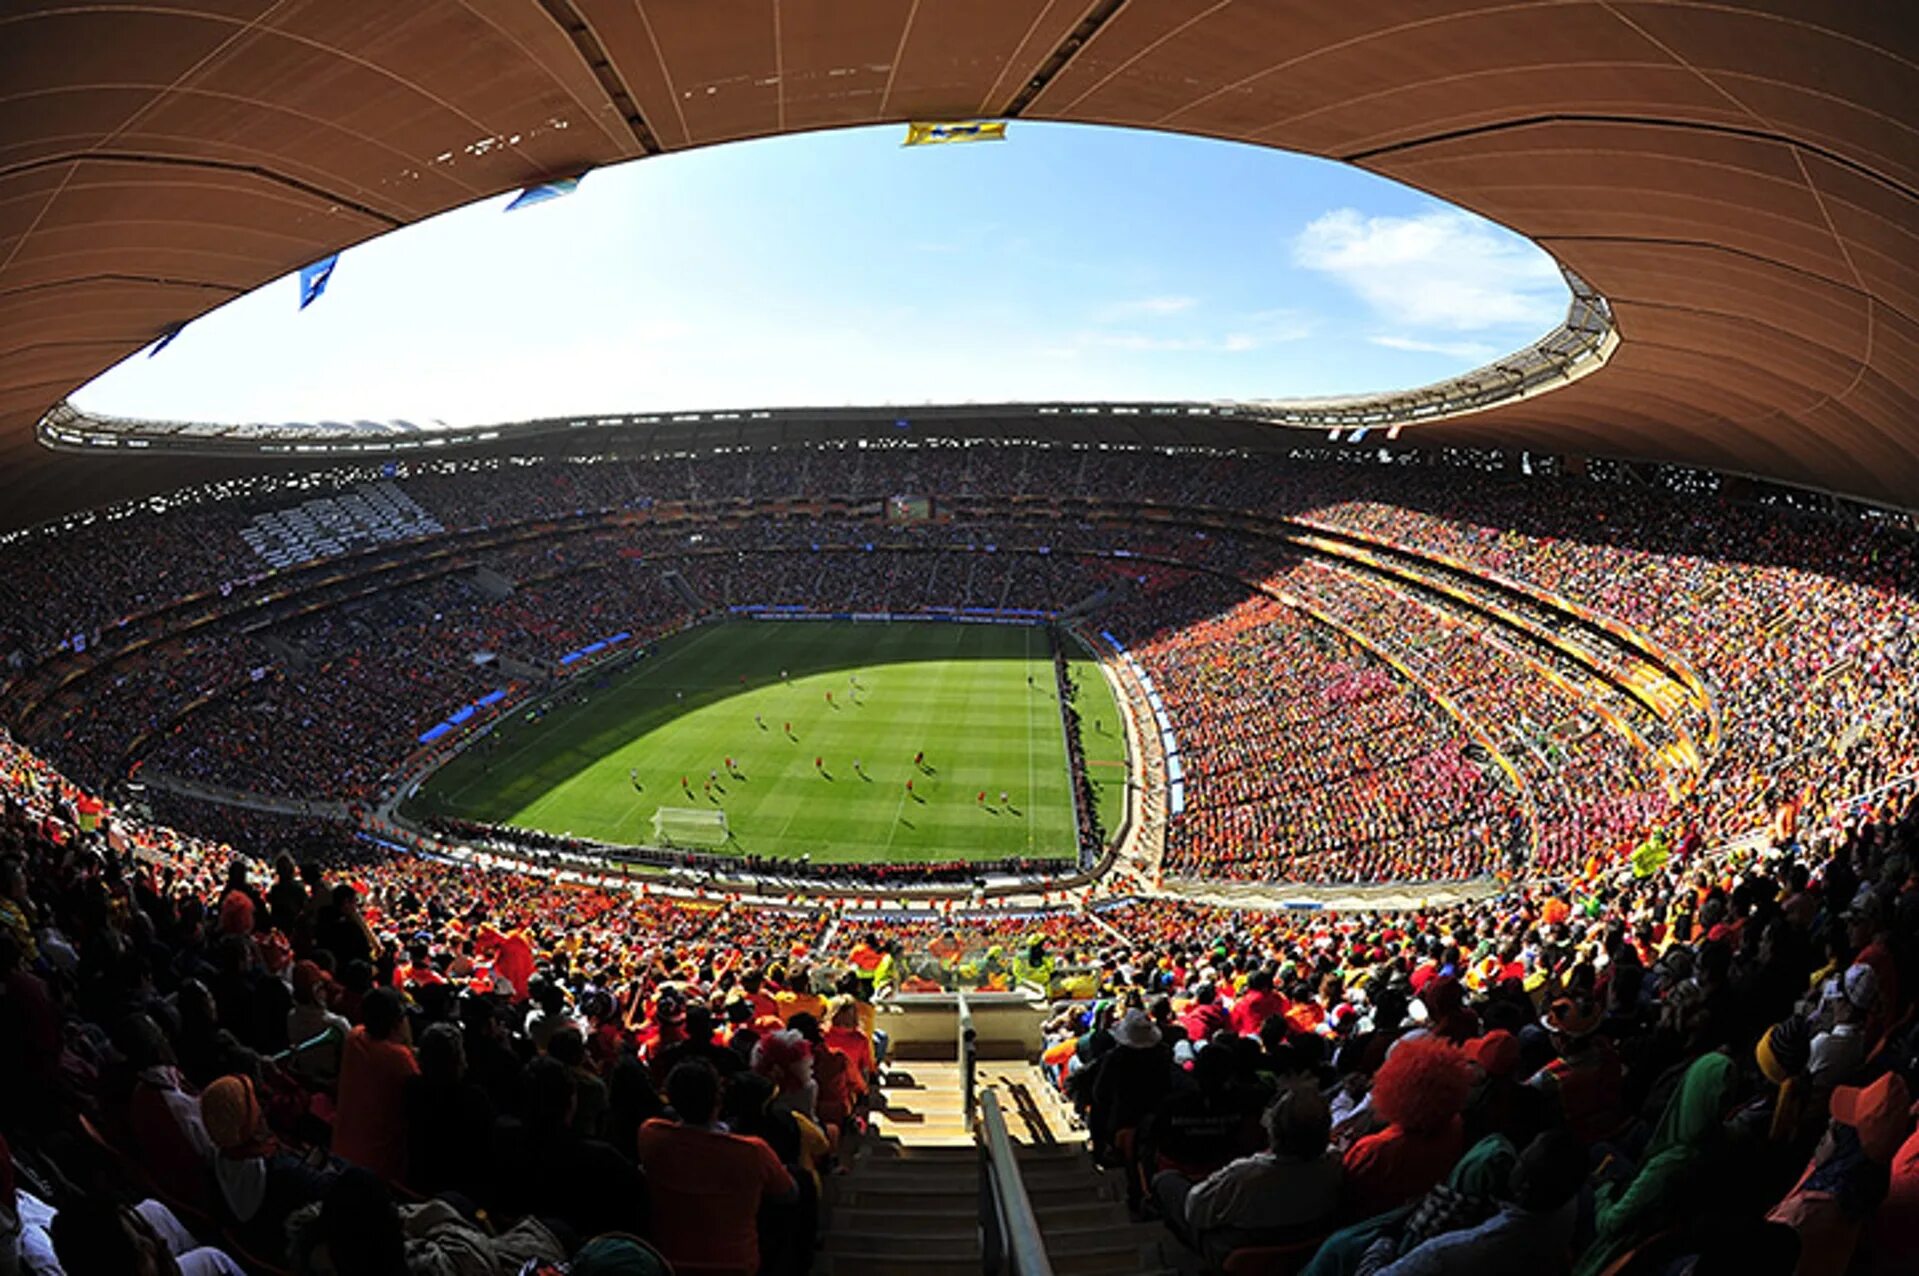 Стадион СОККЕР Сити Йоханнесбург. ФНБ Стэдиум Йоханнесбург. СОККЕР Сити стадион ЮАР. Стадион Роуз Боул в США.